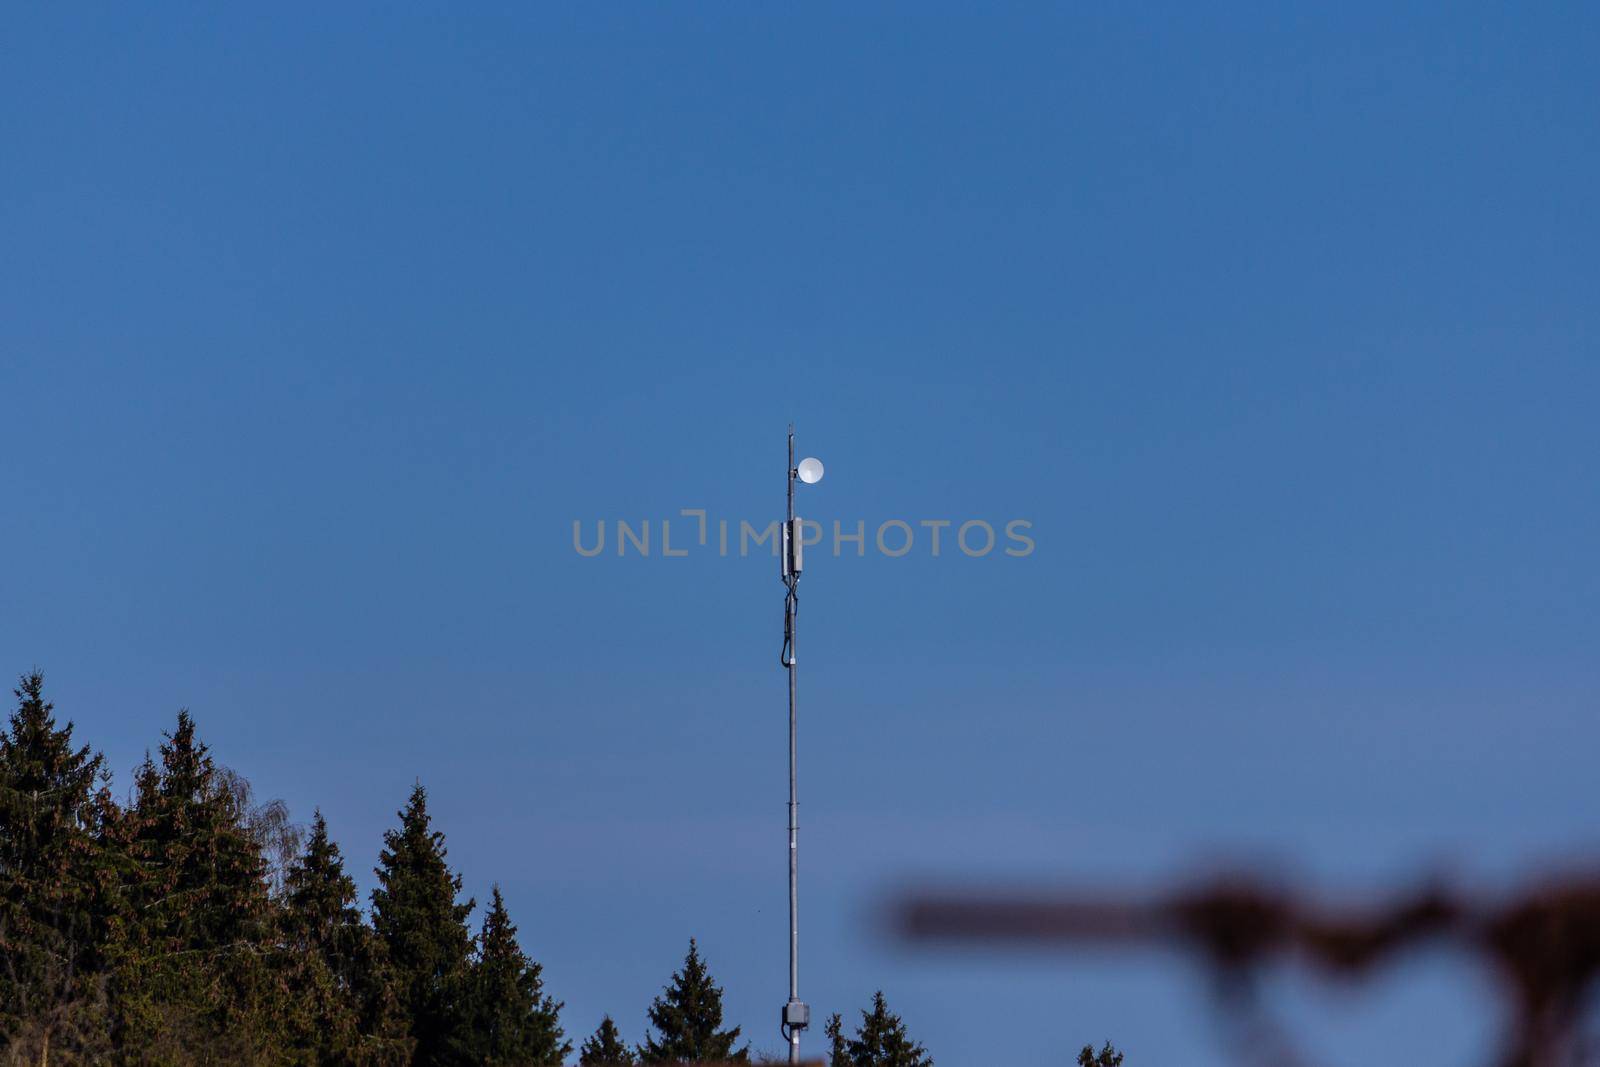 5g antenas phone tower aerials gprs sky by SorokinNikita